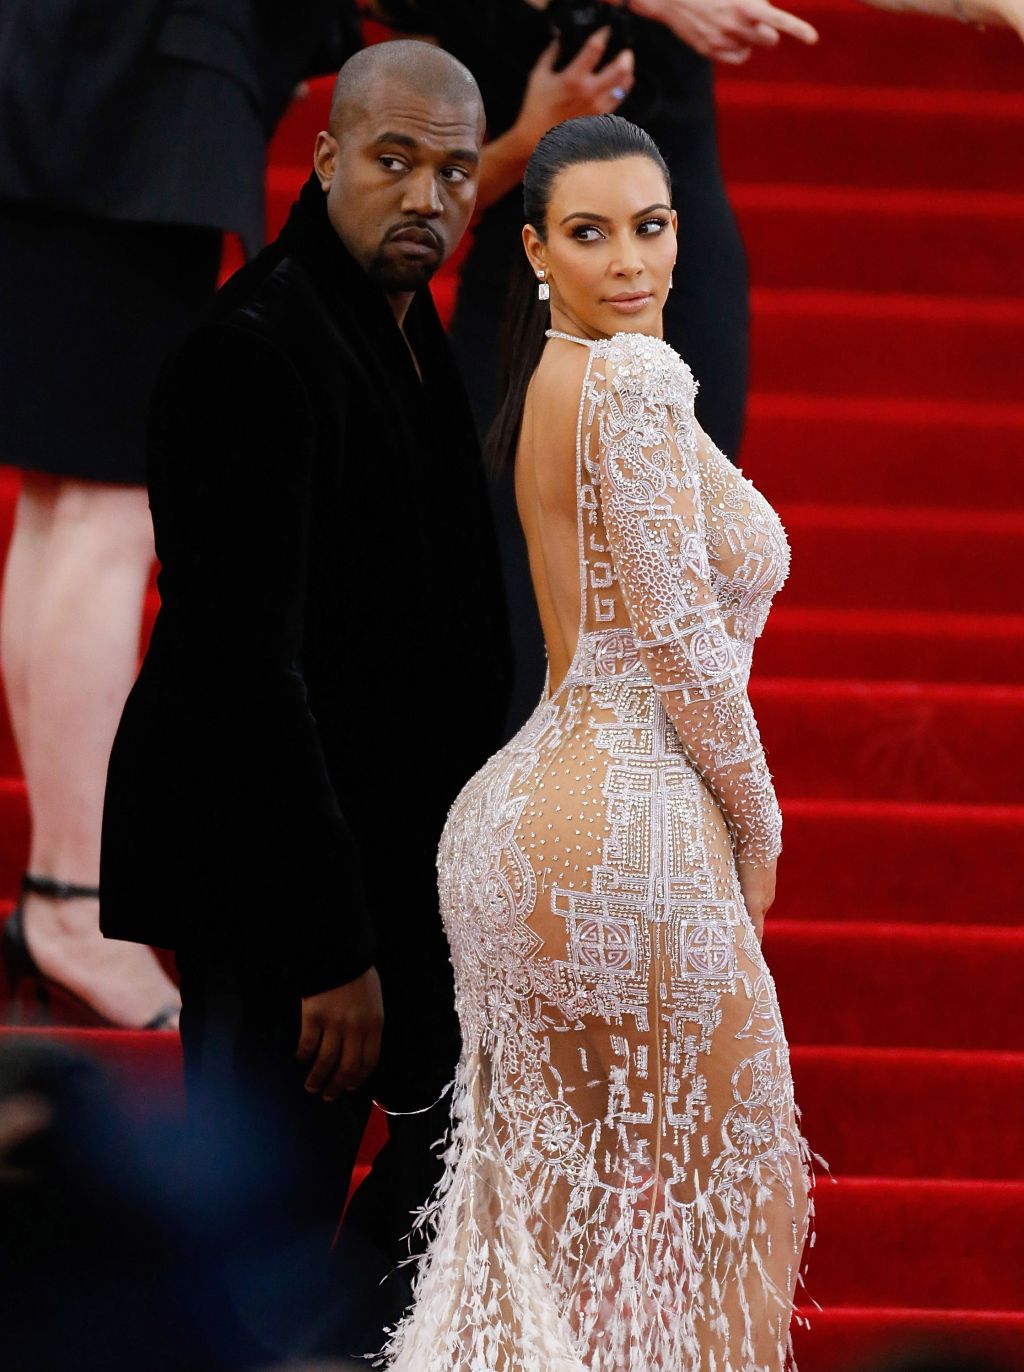 Photos: Kim Kardashian West through the years